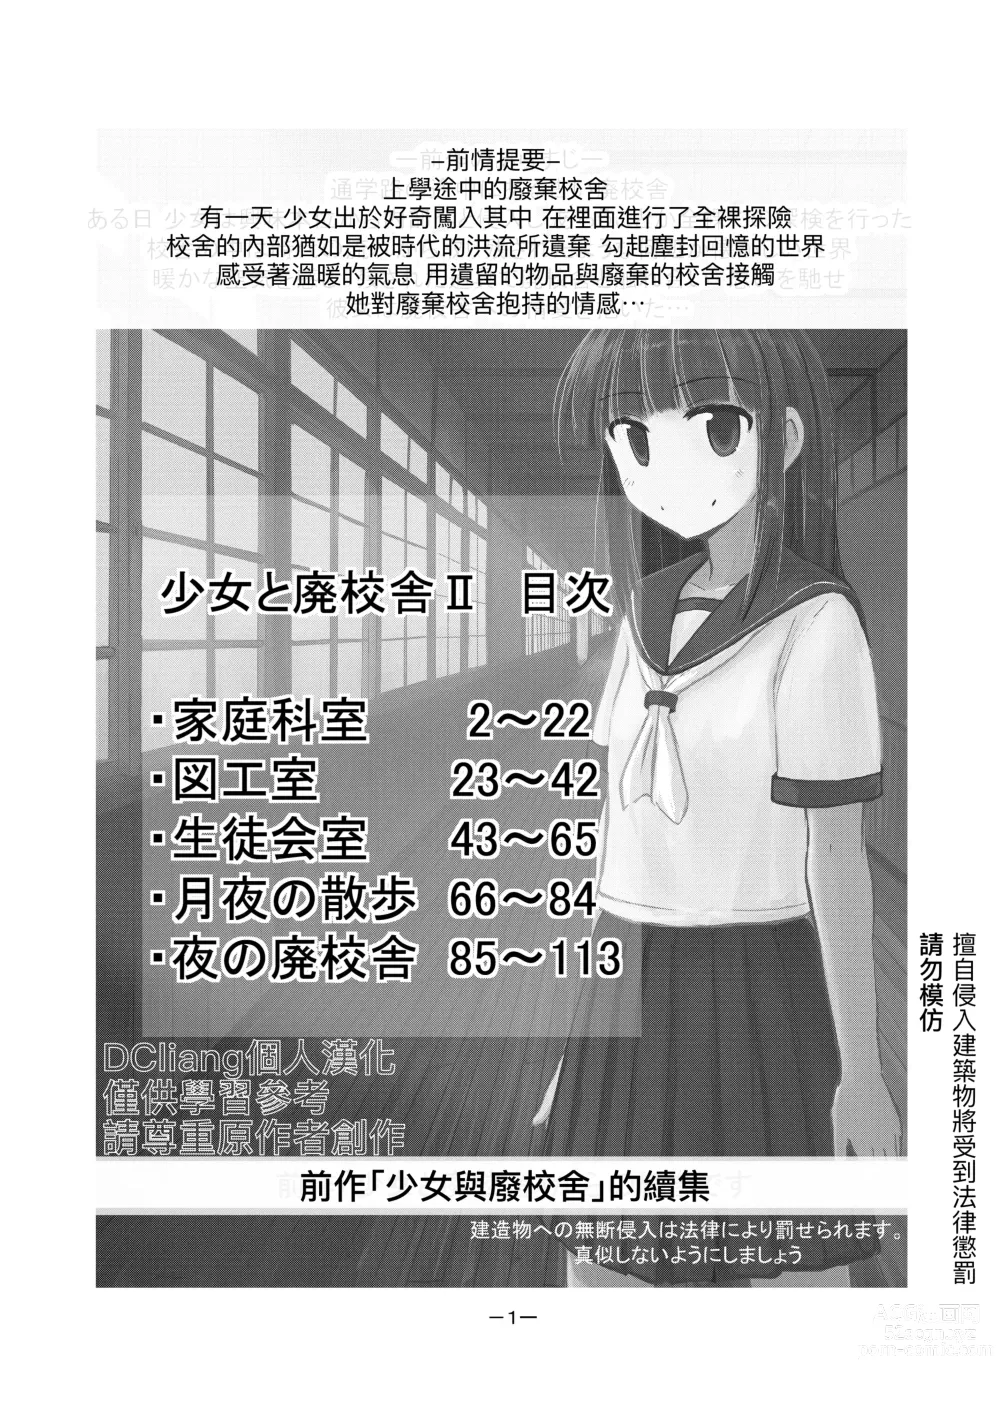 Page 2 of doujinshi Shoujo to Haikousha II